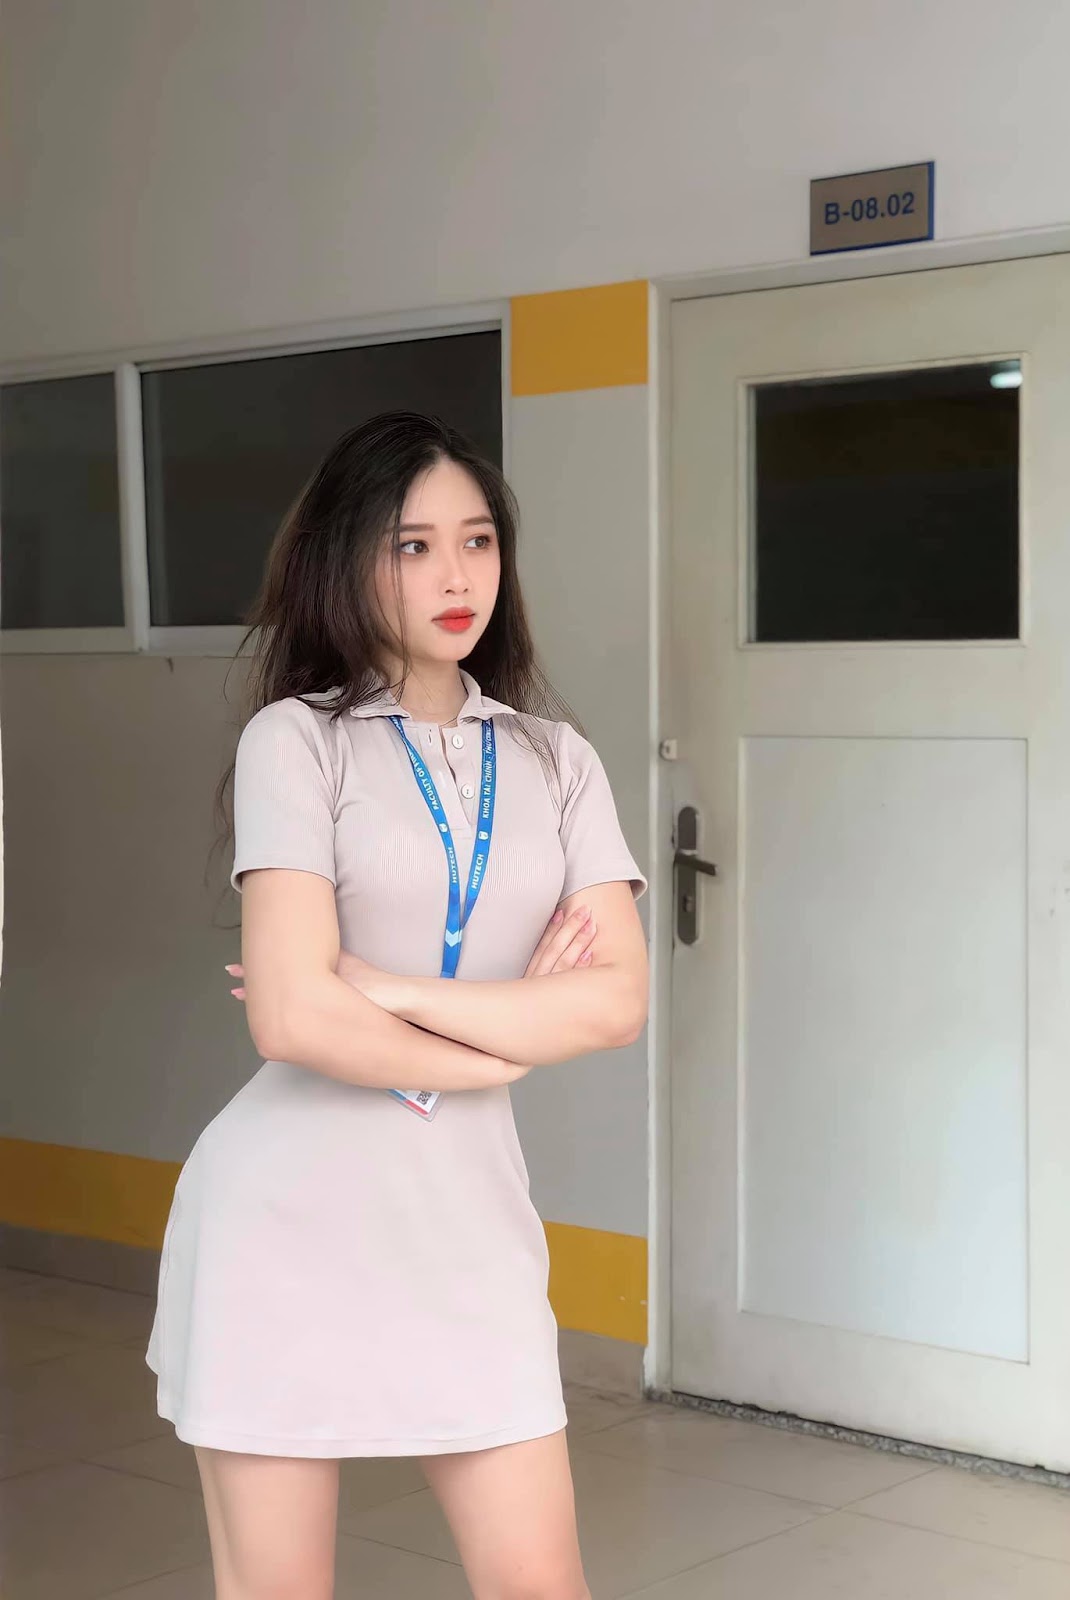 Nữ sinh khả ái trường Hutech Trần Nhung : Tự tin là trang phục đẹp nhất của con gái 77